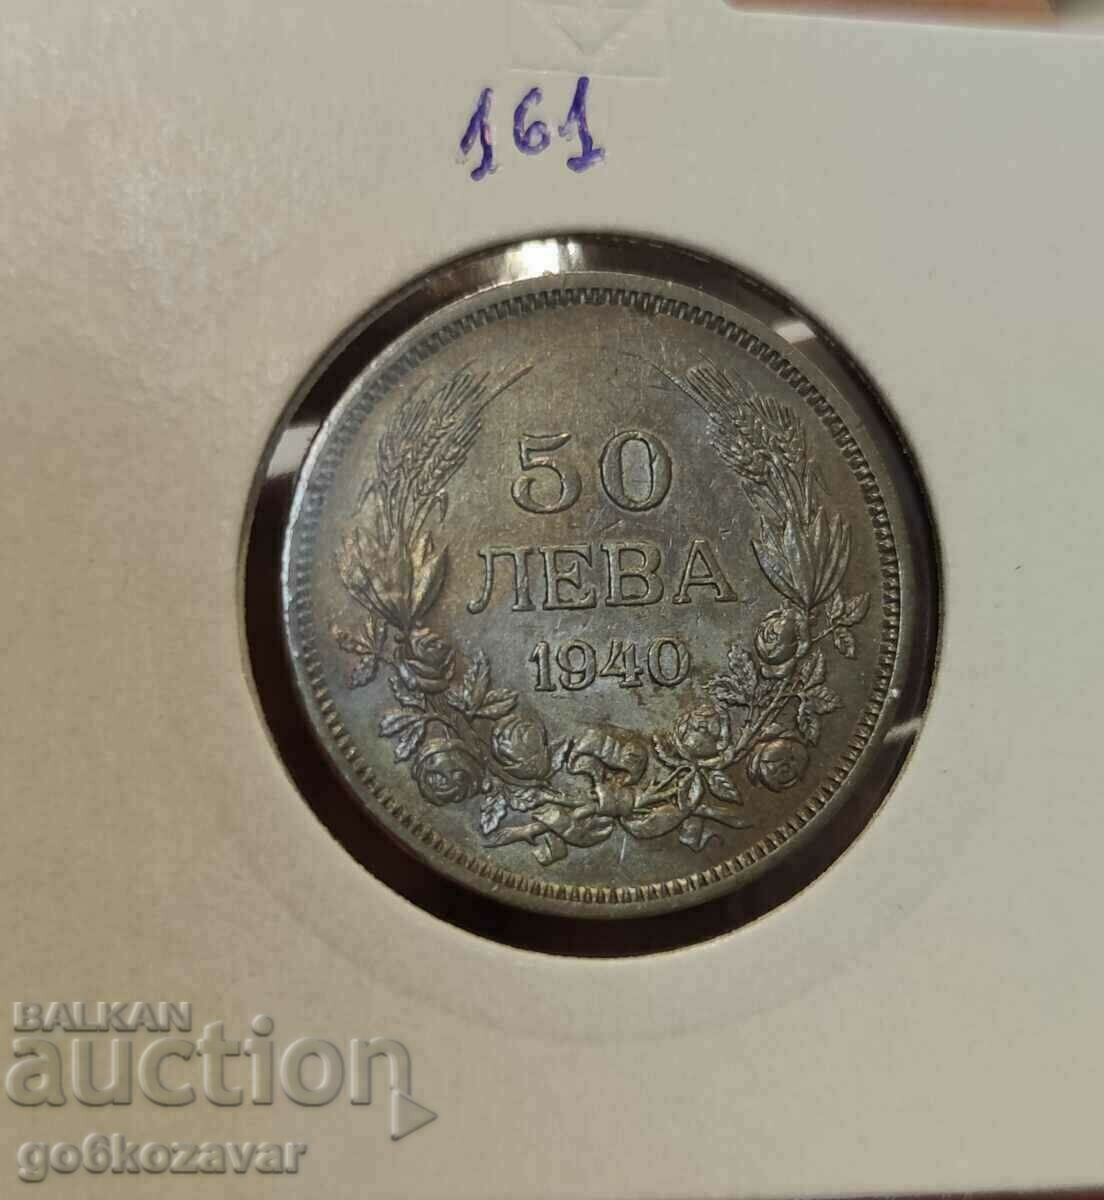 Bulgaria 50 BGN 1940 Coin for collection!